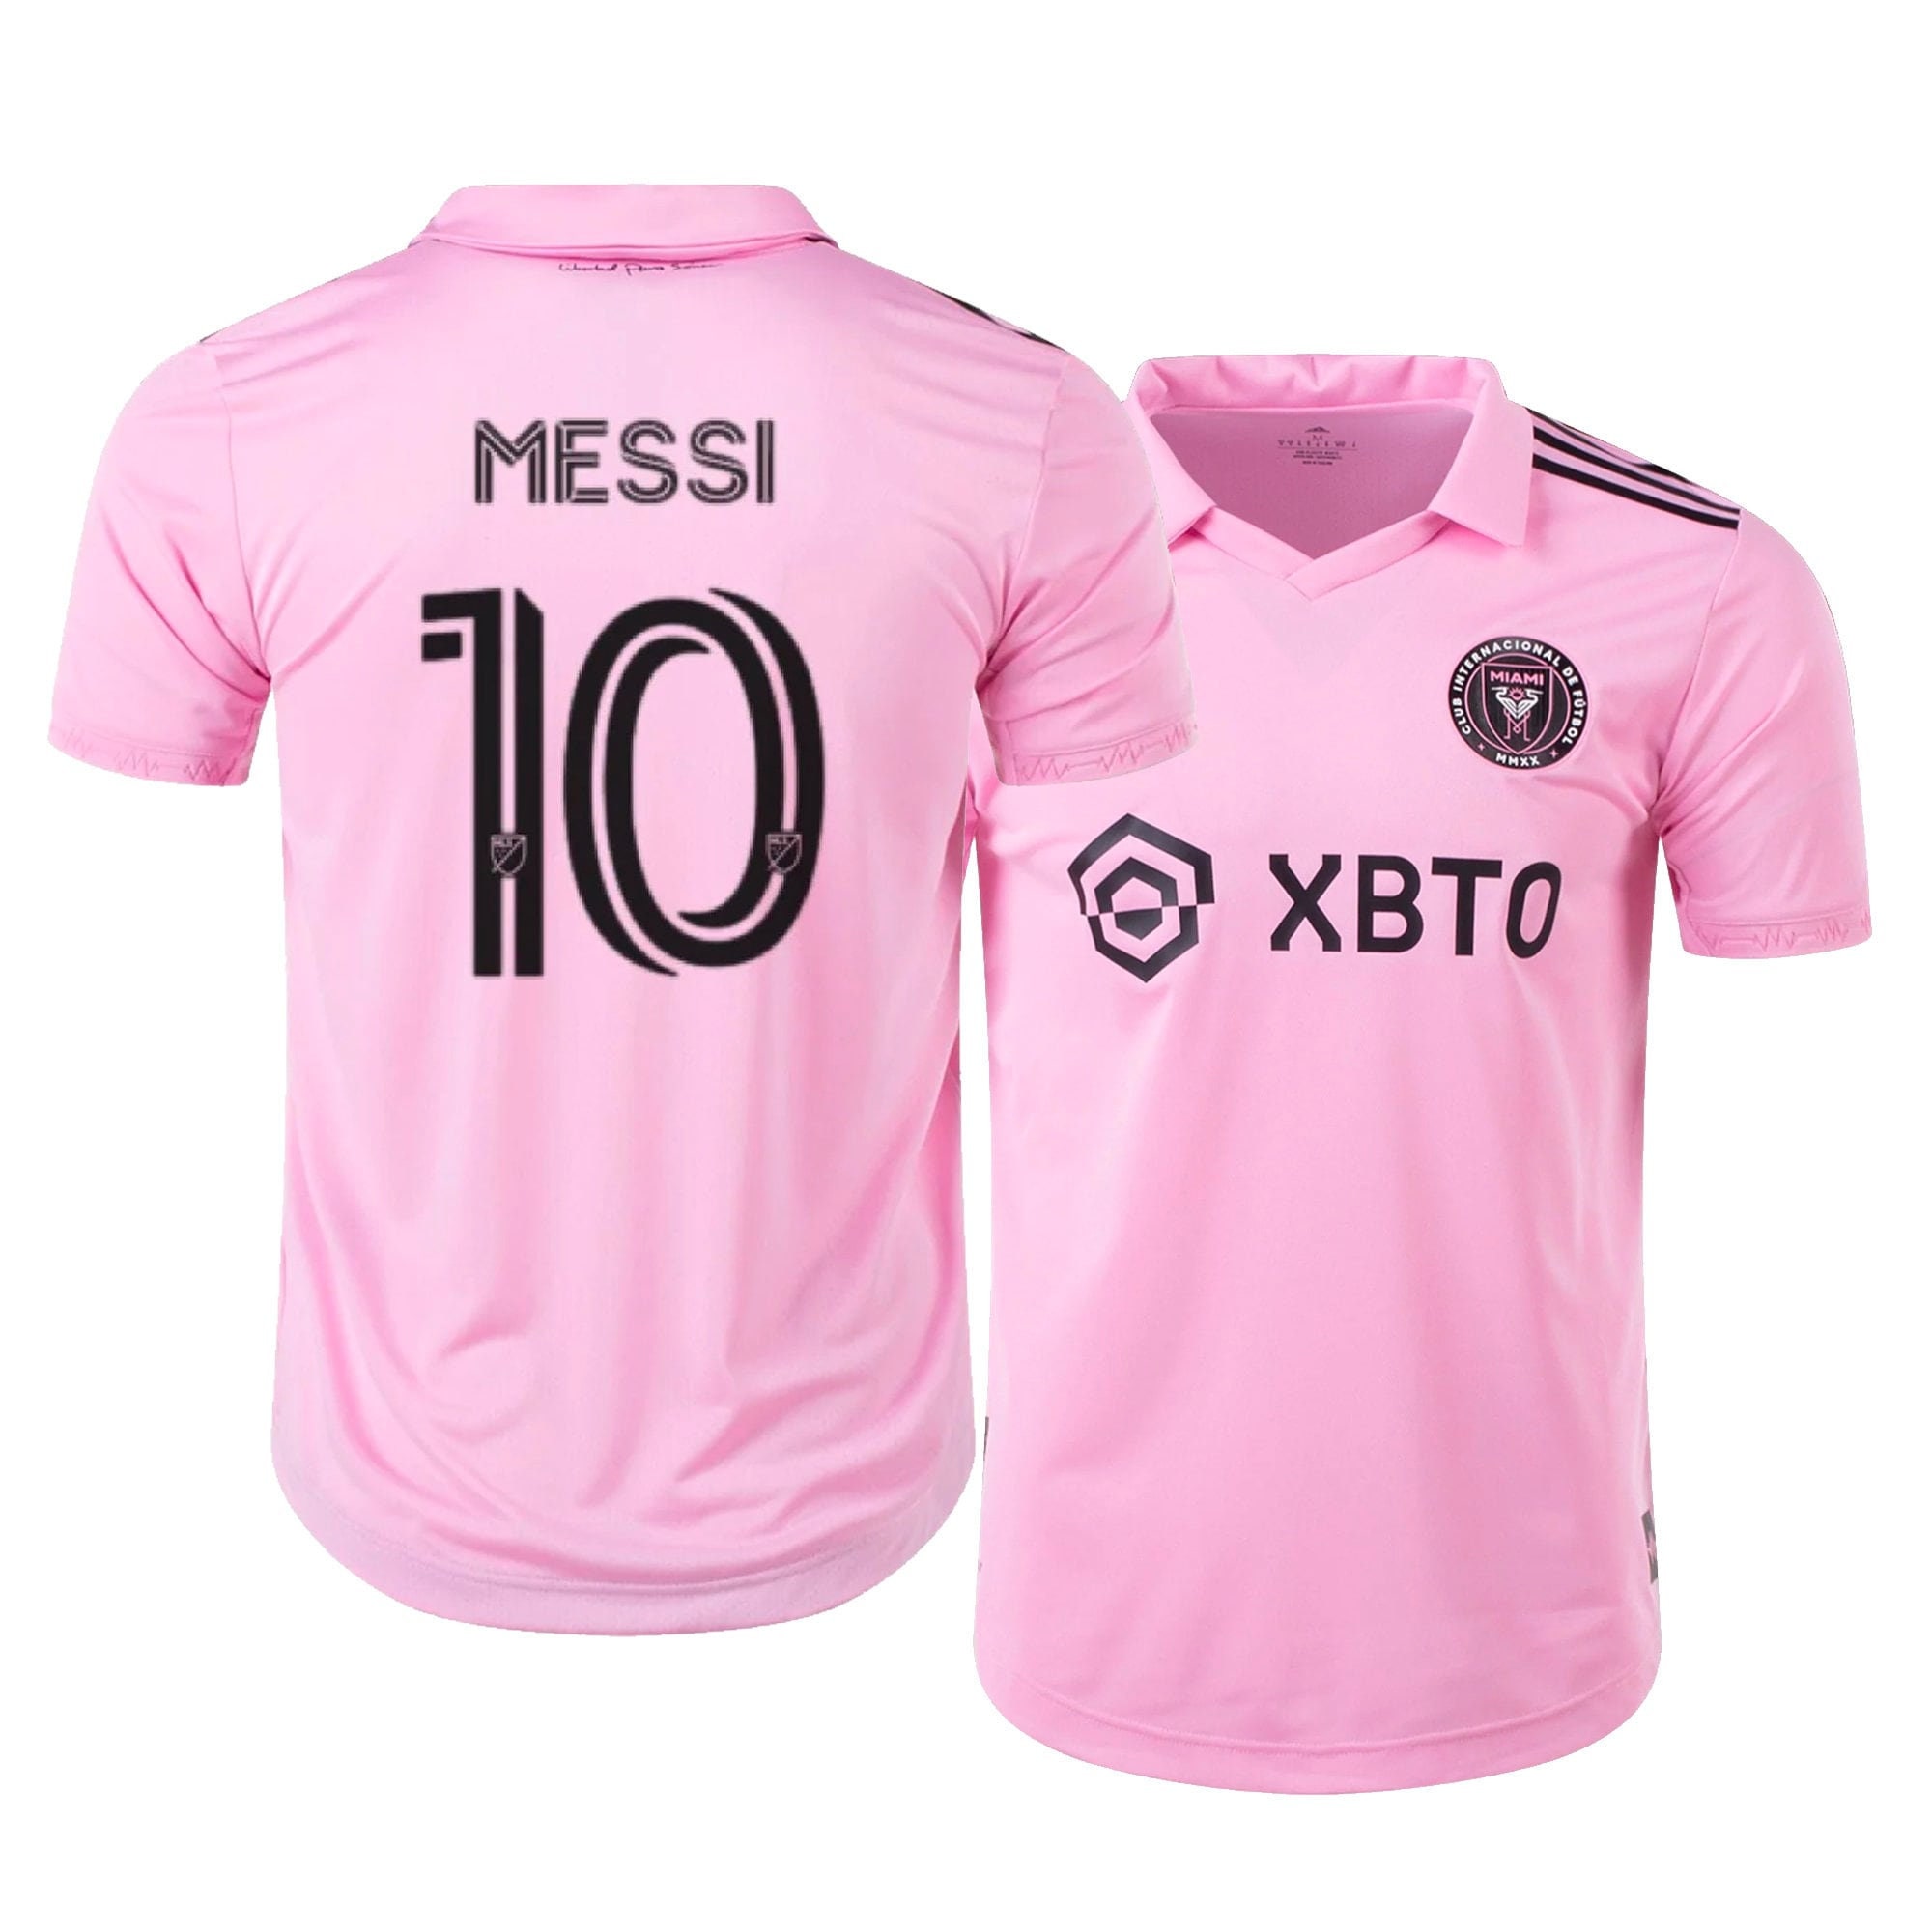 Messi Jersey Set Soccer Kit Pink or Black NEW 23/24 Uniform Etsy